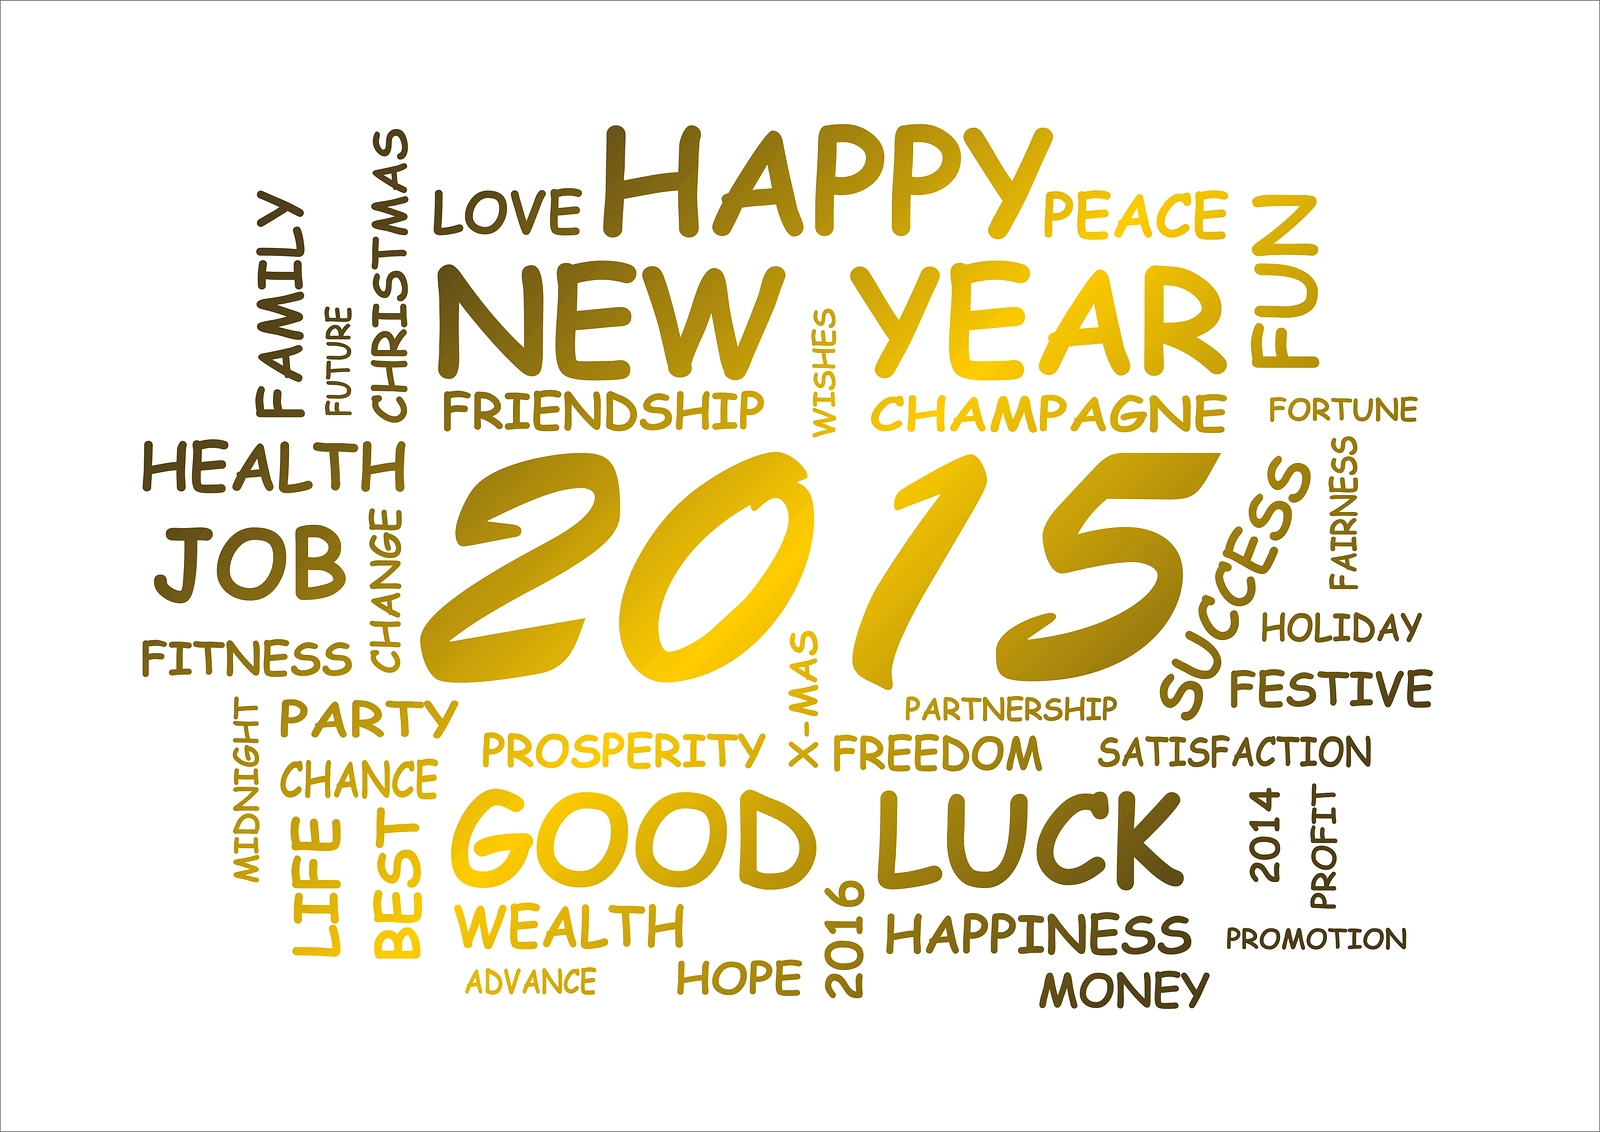 Trimax vous souhaite une bonne année 2015!!!